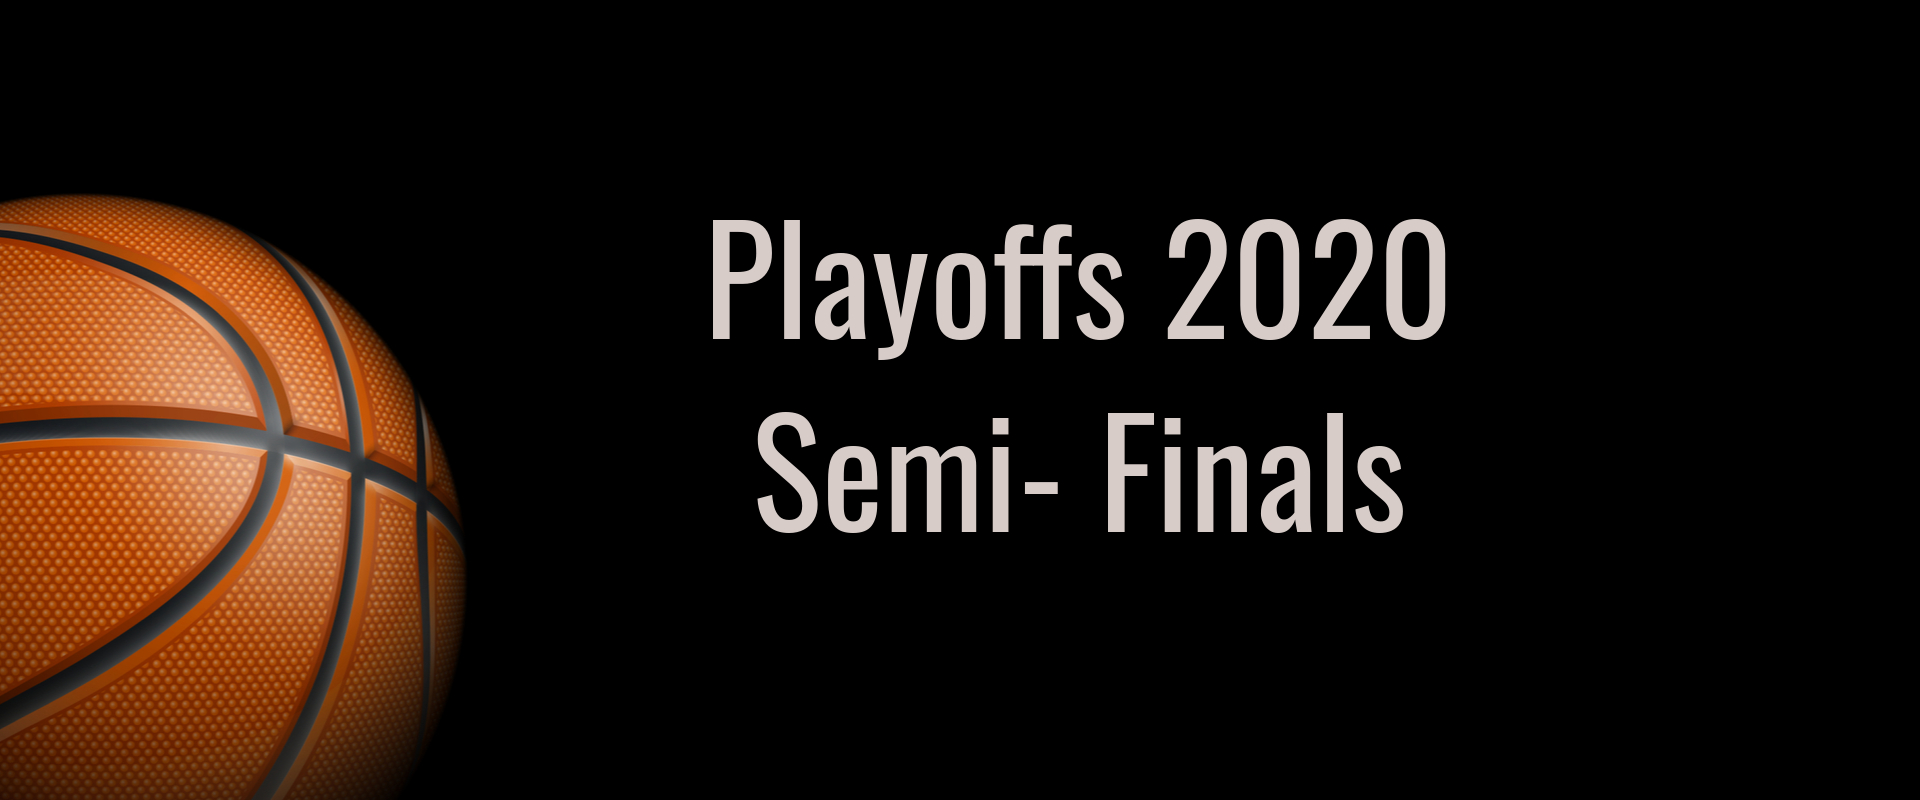 NBA Playoffs 2020 Semi-Finals